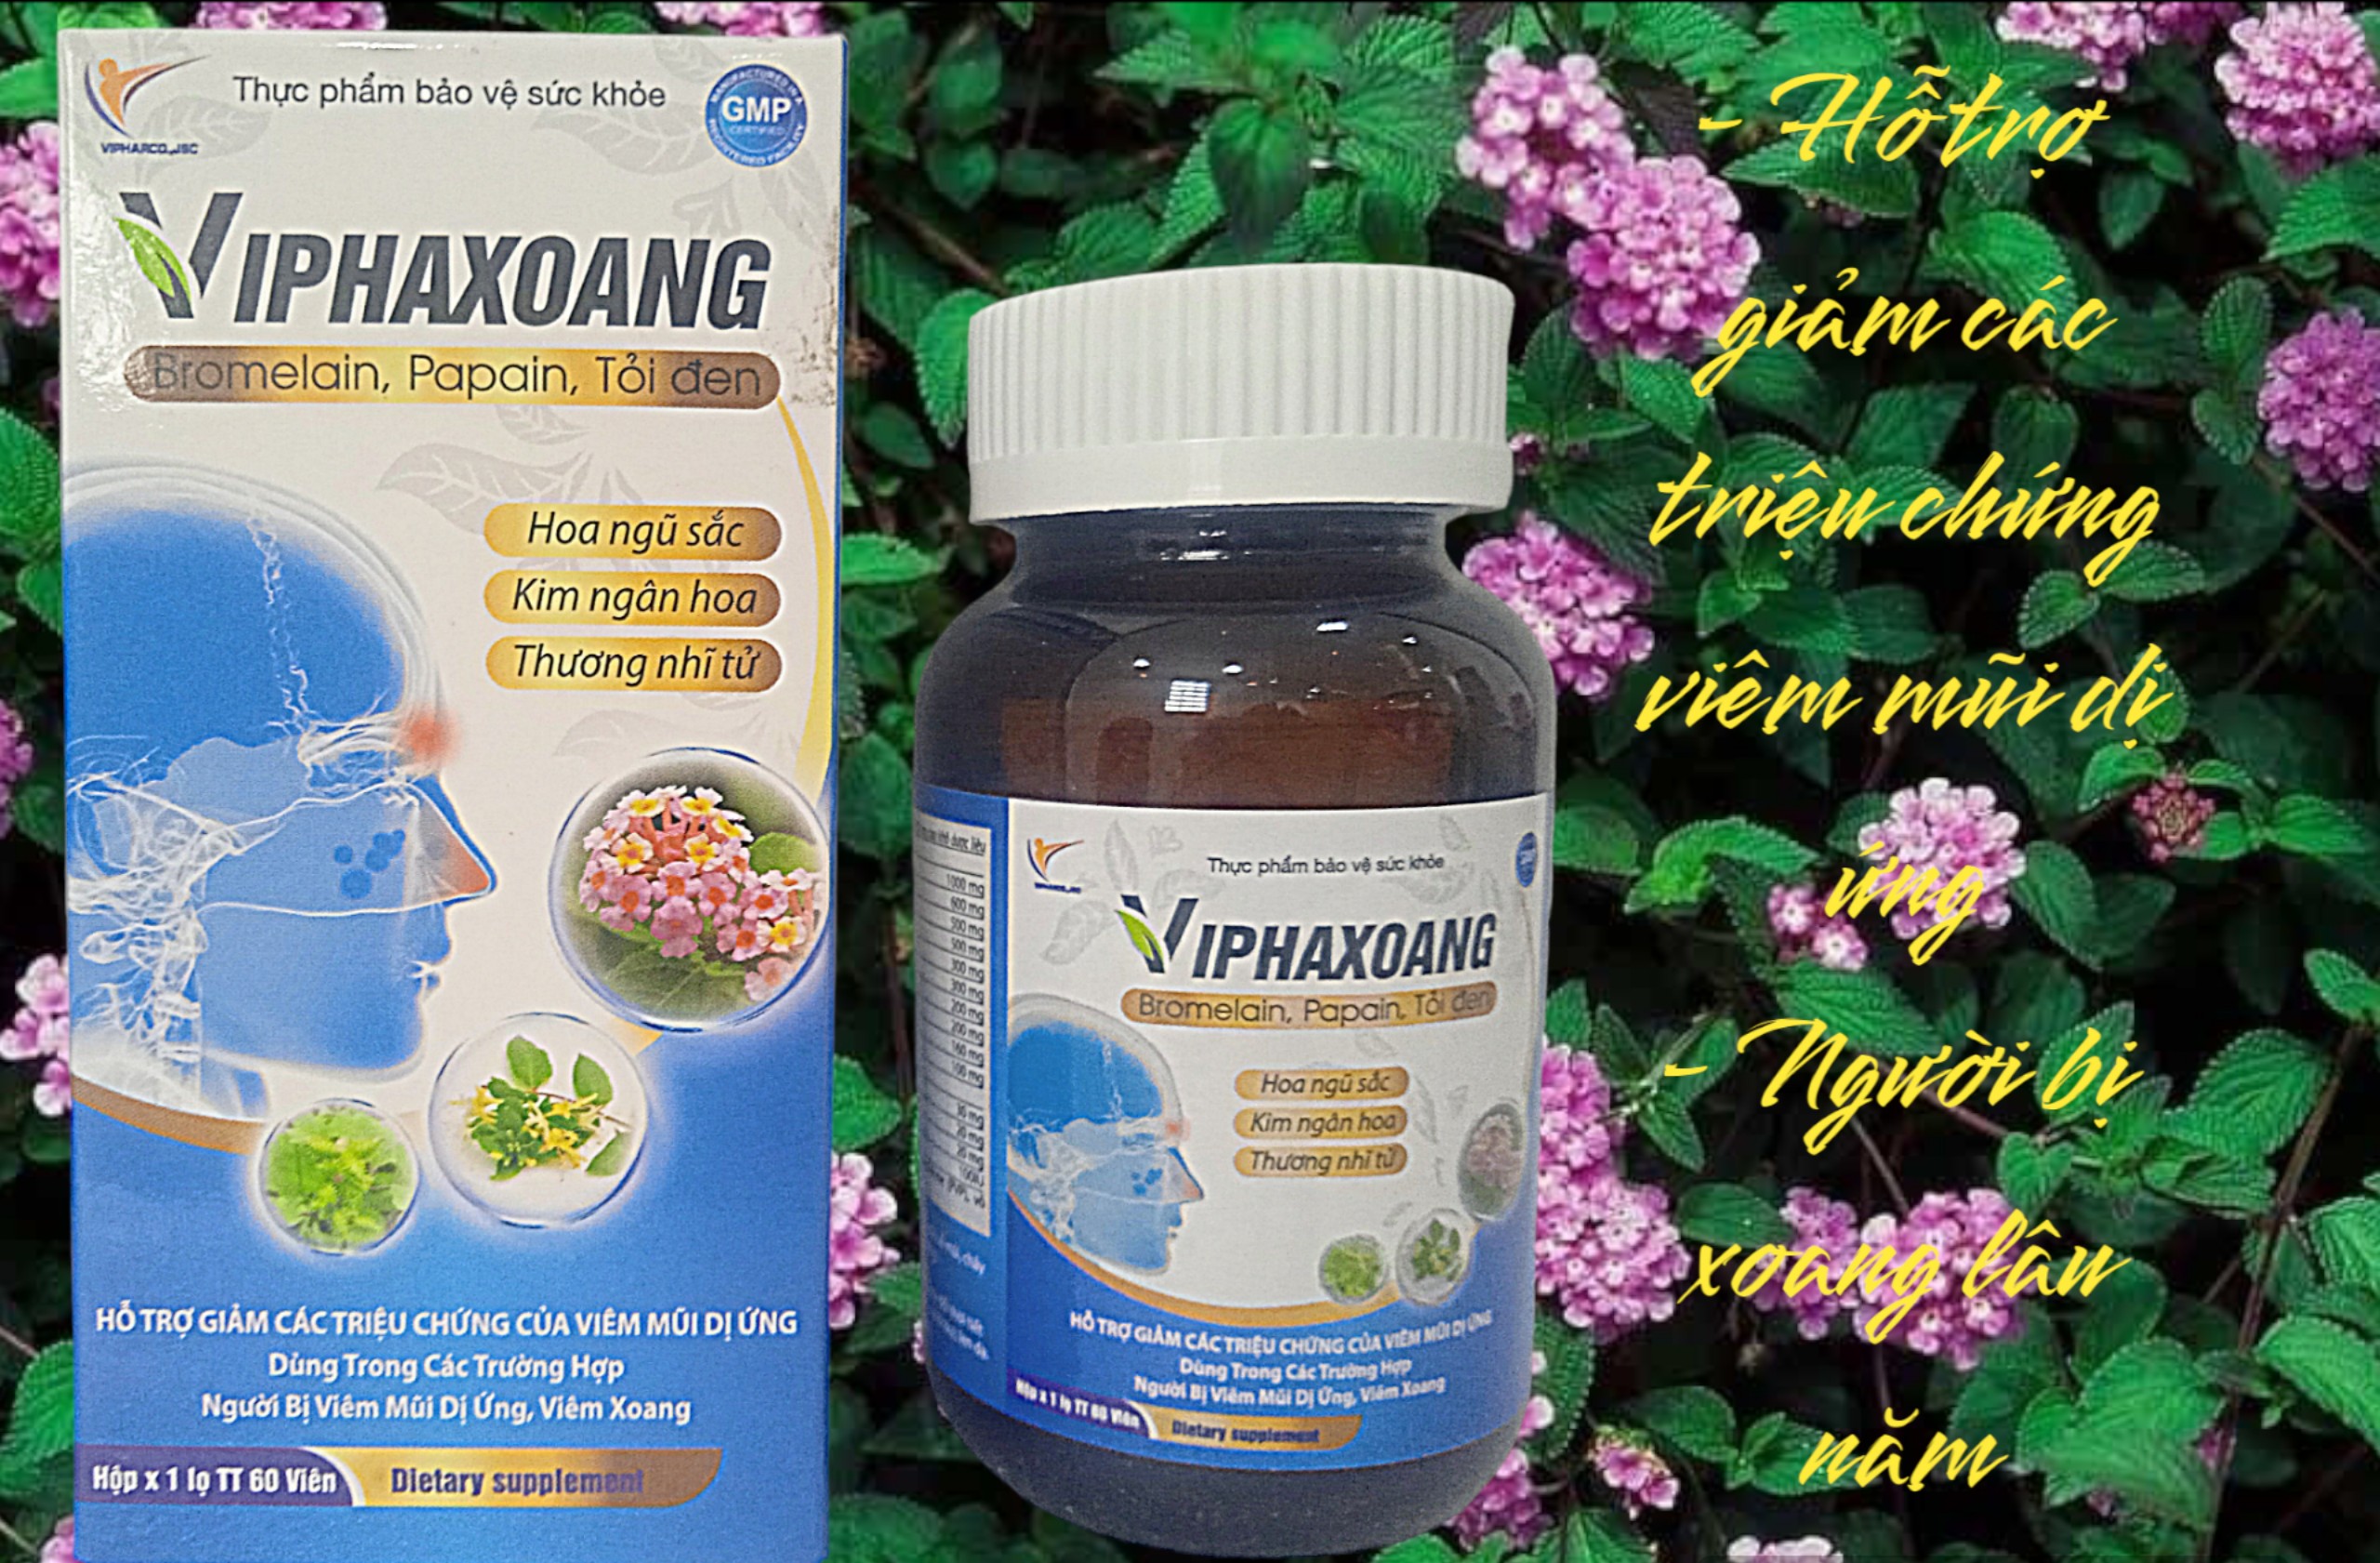 Trị xoang Viphaxoang - Hỗ trợ giảm các triệu chứng viêm mũi dị ứng